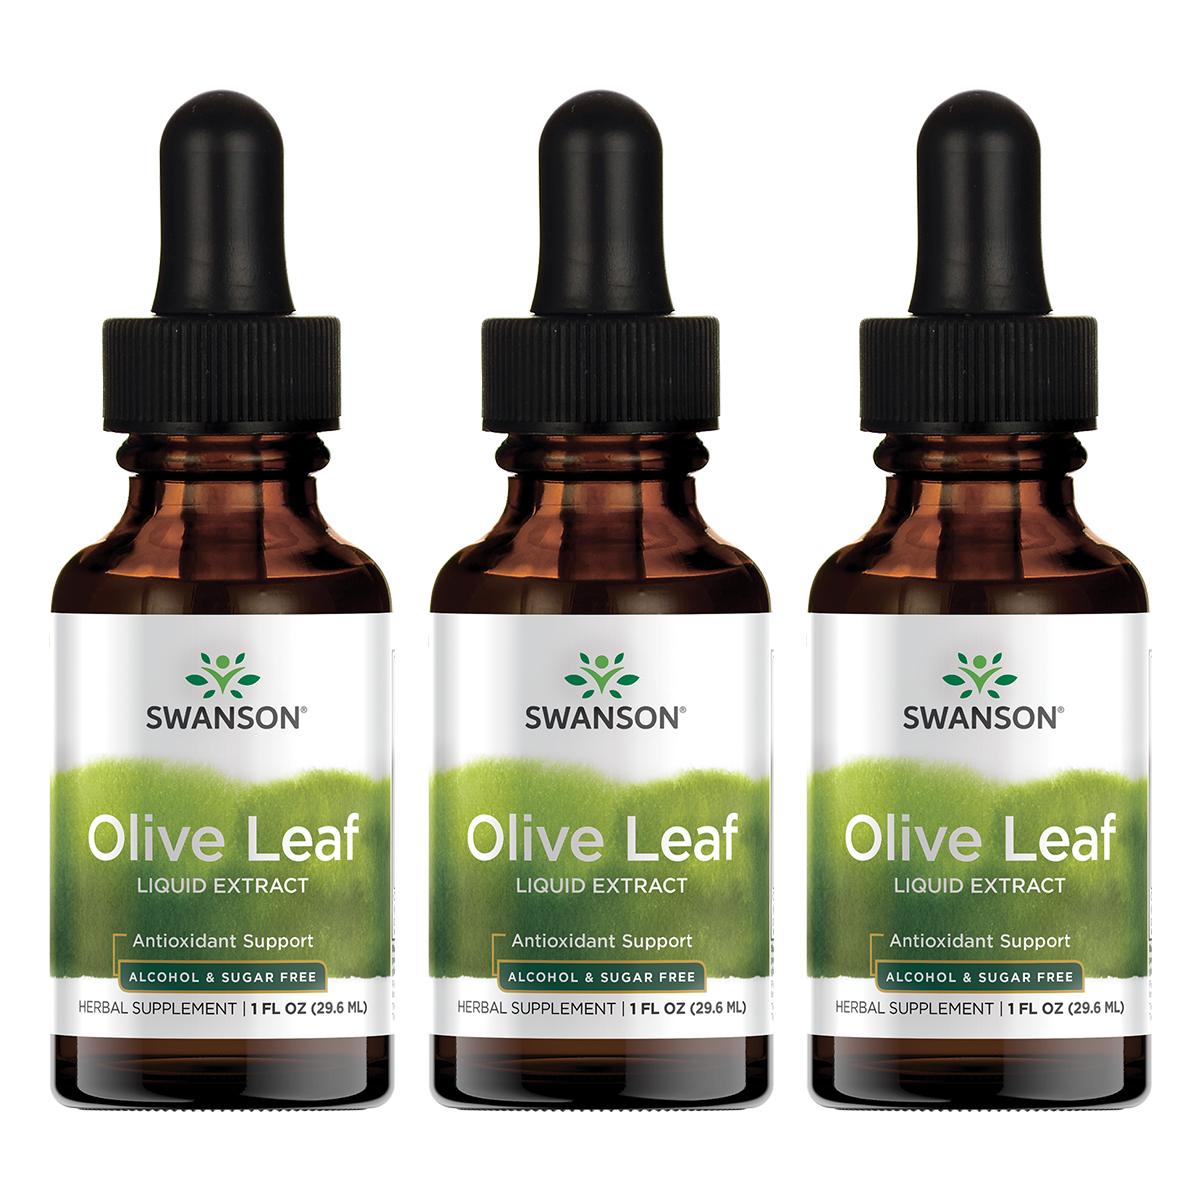 Swanson Premium Olive Leaf Liquid Extract - Alcohol & Sugar Free 3 Pack Vitamin 1.5 G 1 fl oz Liquid